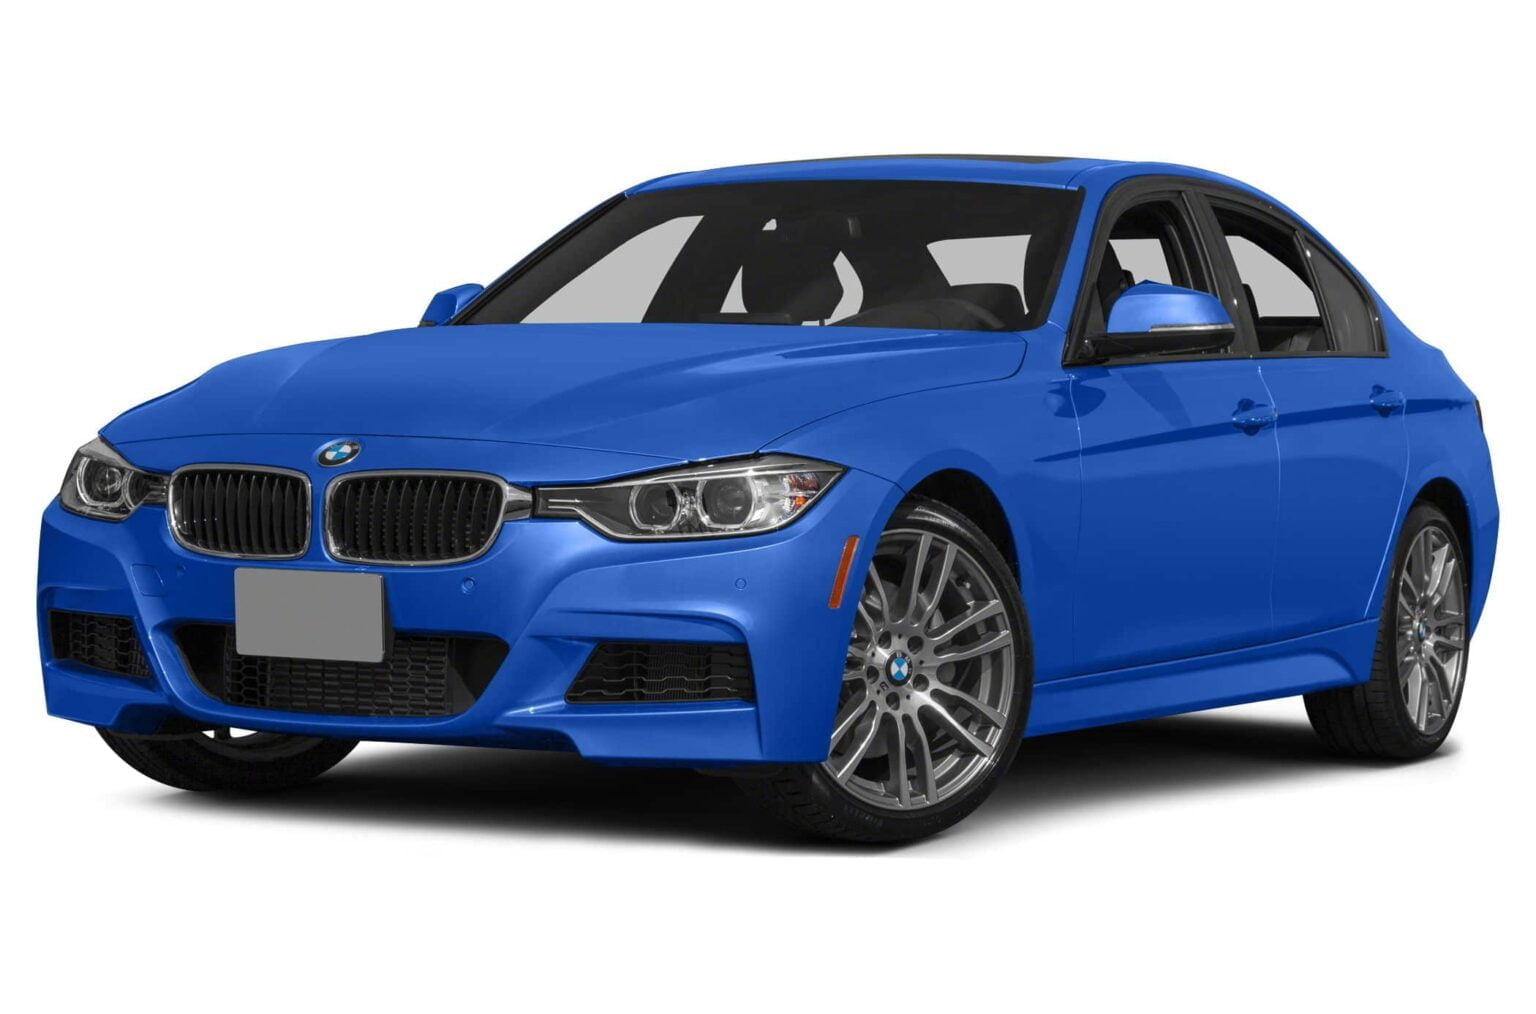 Descargar Catalogo de Partes BMW 335i Xdrive 2013 AutoPartes y Refacciones